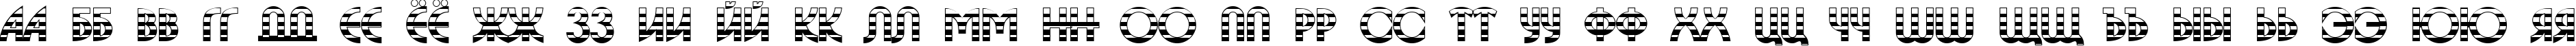 Пример написания русского алфавита шрифтом a_BosaNovaGdStr Bold